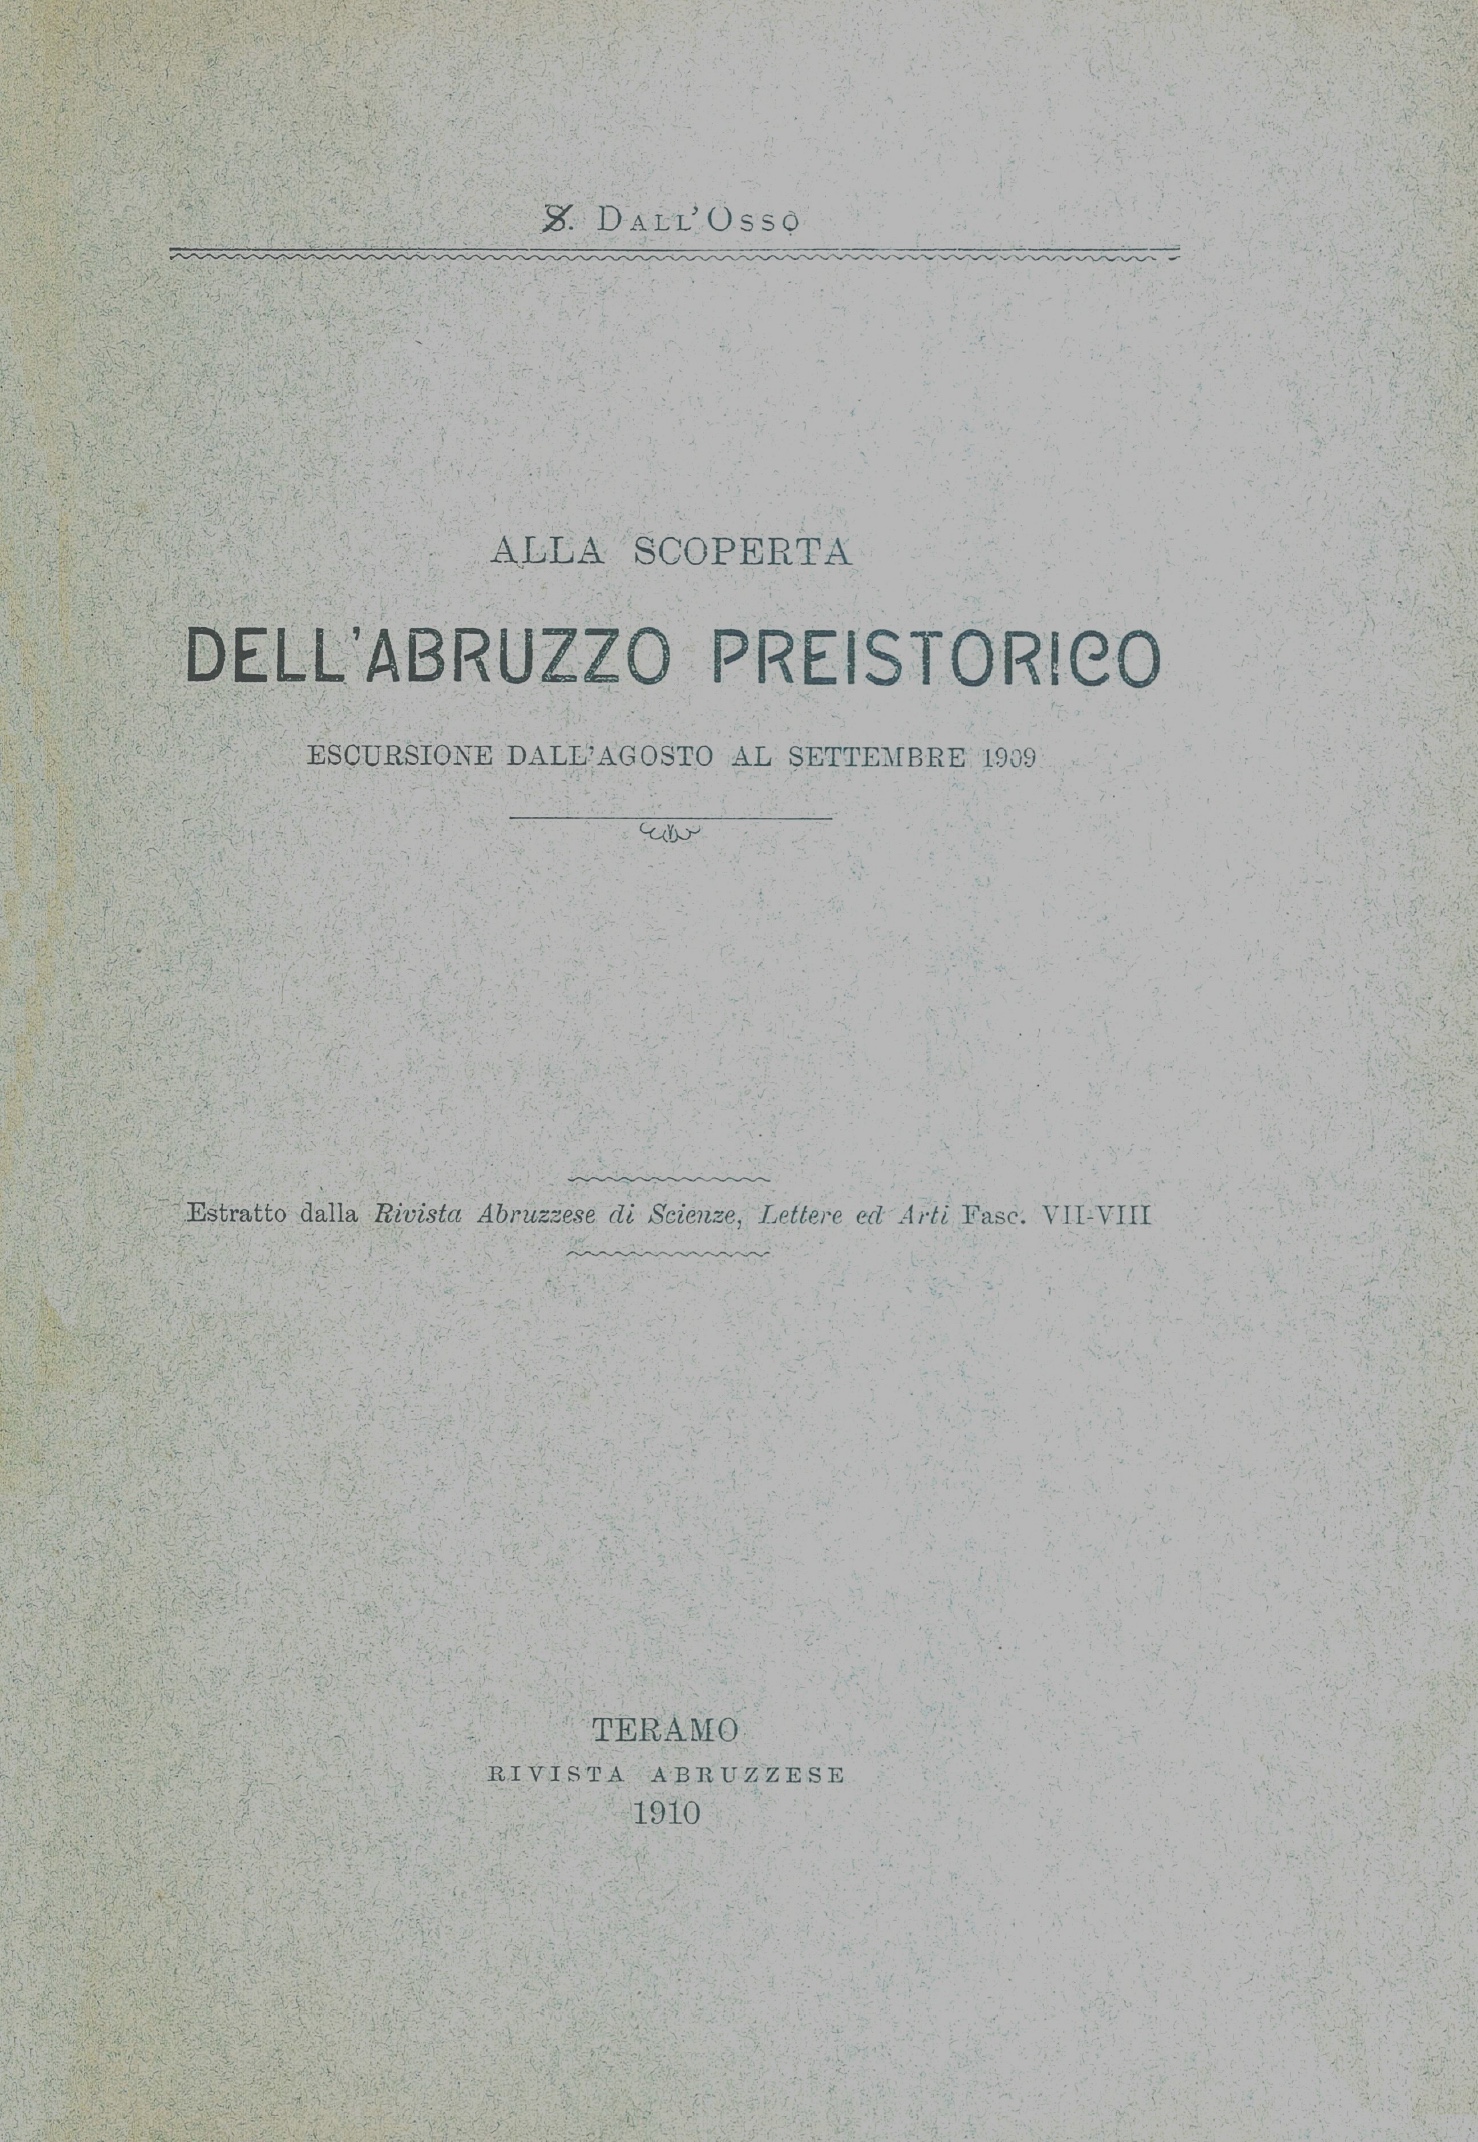 Storia Locale - Dall'Osso - Abruzzo Preistorico - ed. 1910 - <b>DOWNLOAD</b>